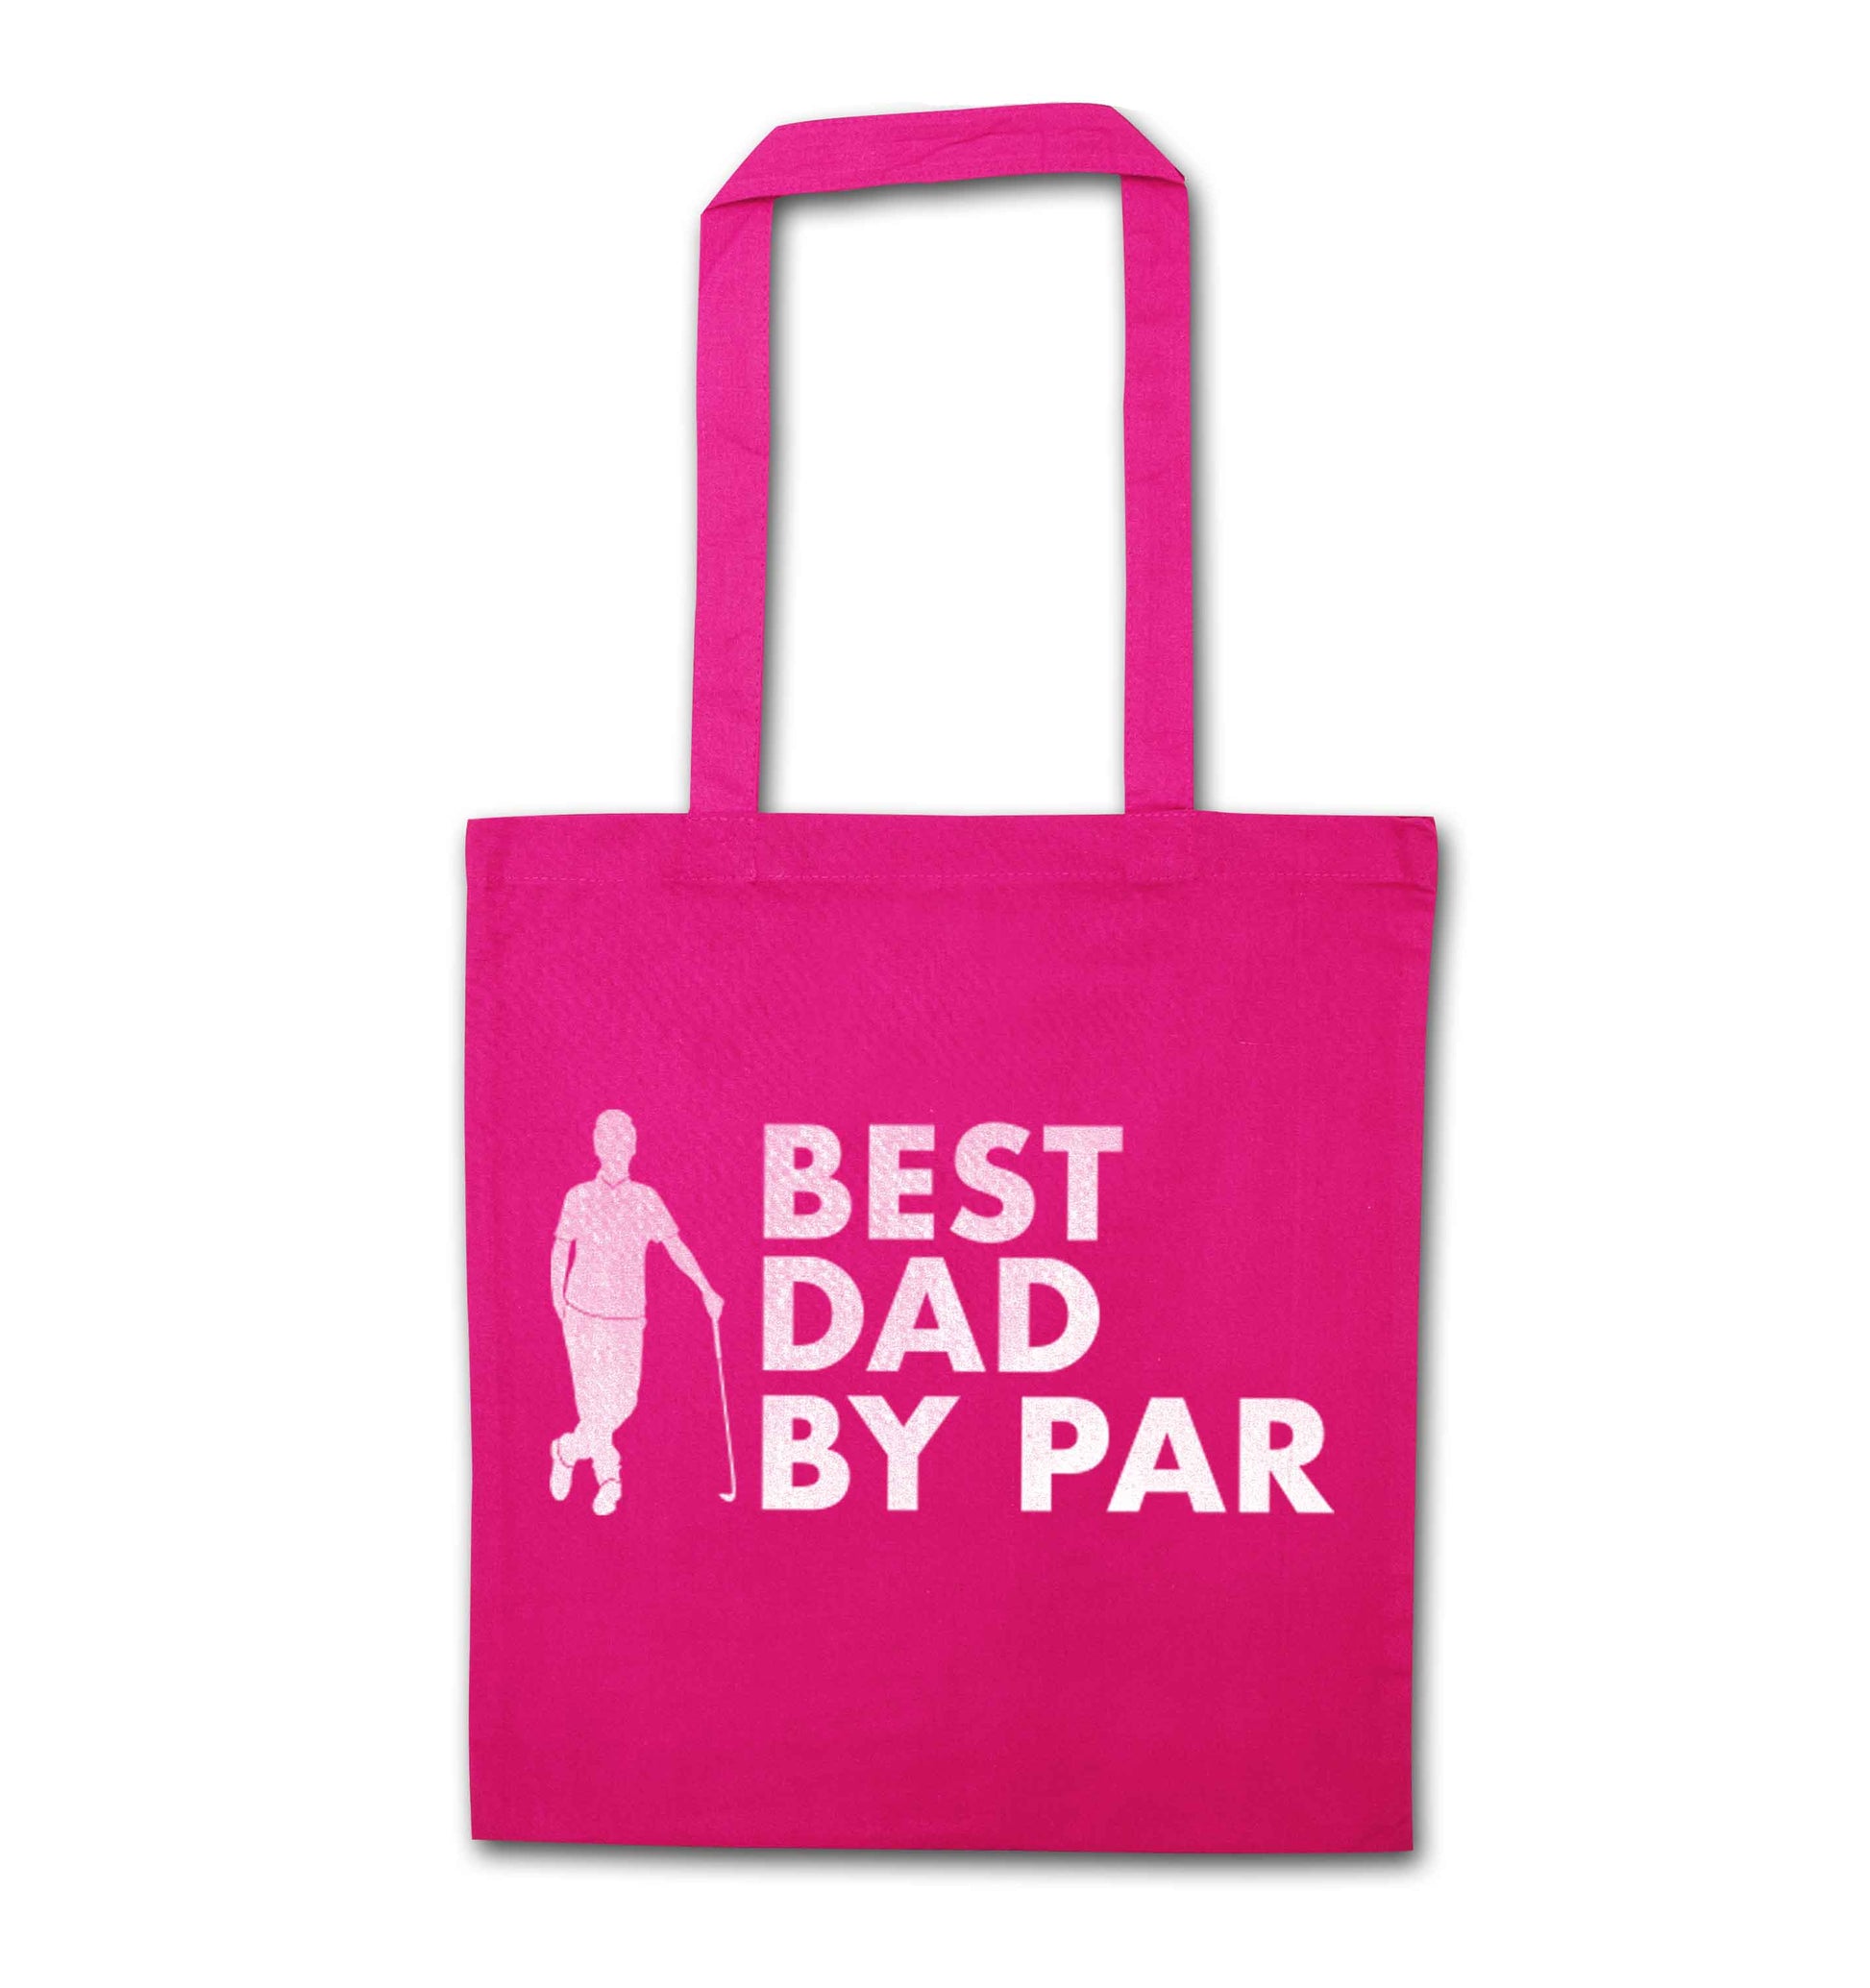 Best dad by par pink tote bag